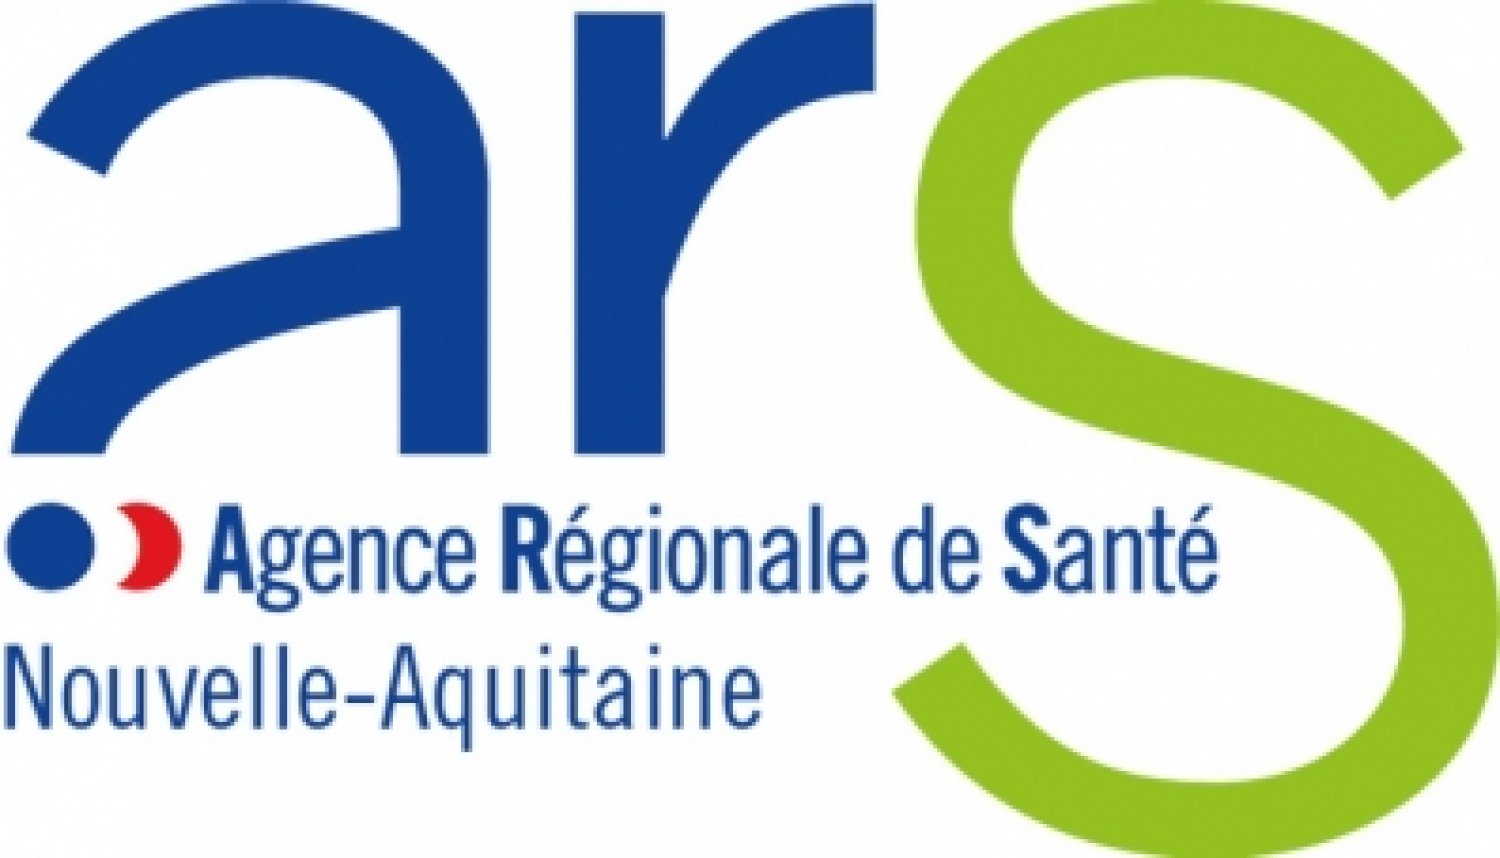 Registre des Cancers - Poitou-Charentes Agence Régionale de Santé - Nouvelle-Aquitaine